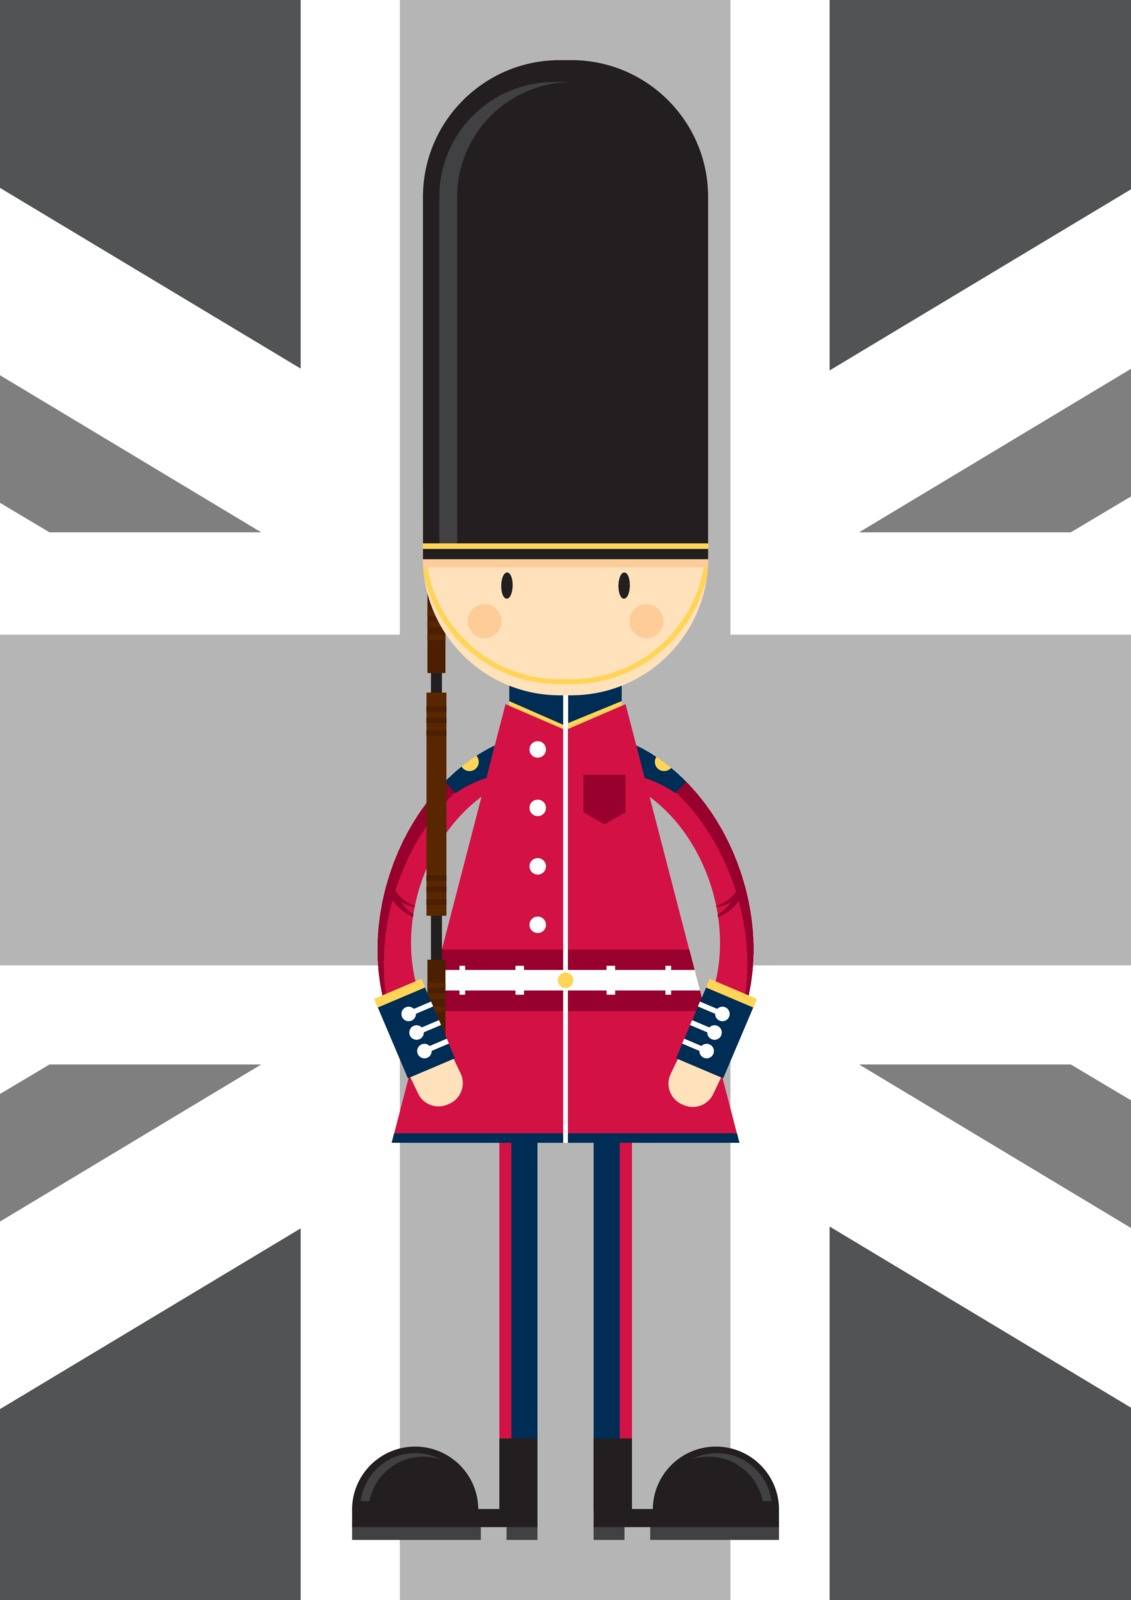 Cartoon British Queen’s Guard by markmurphycreative